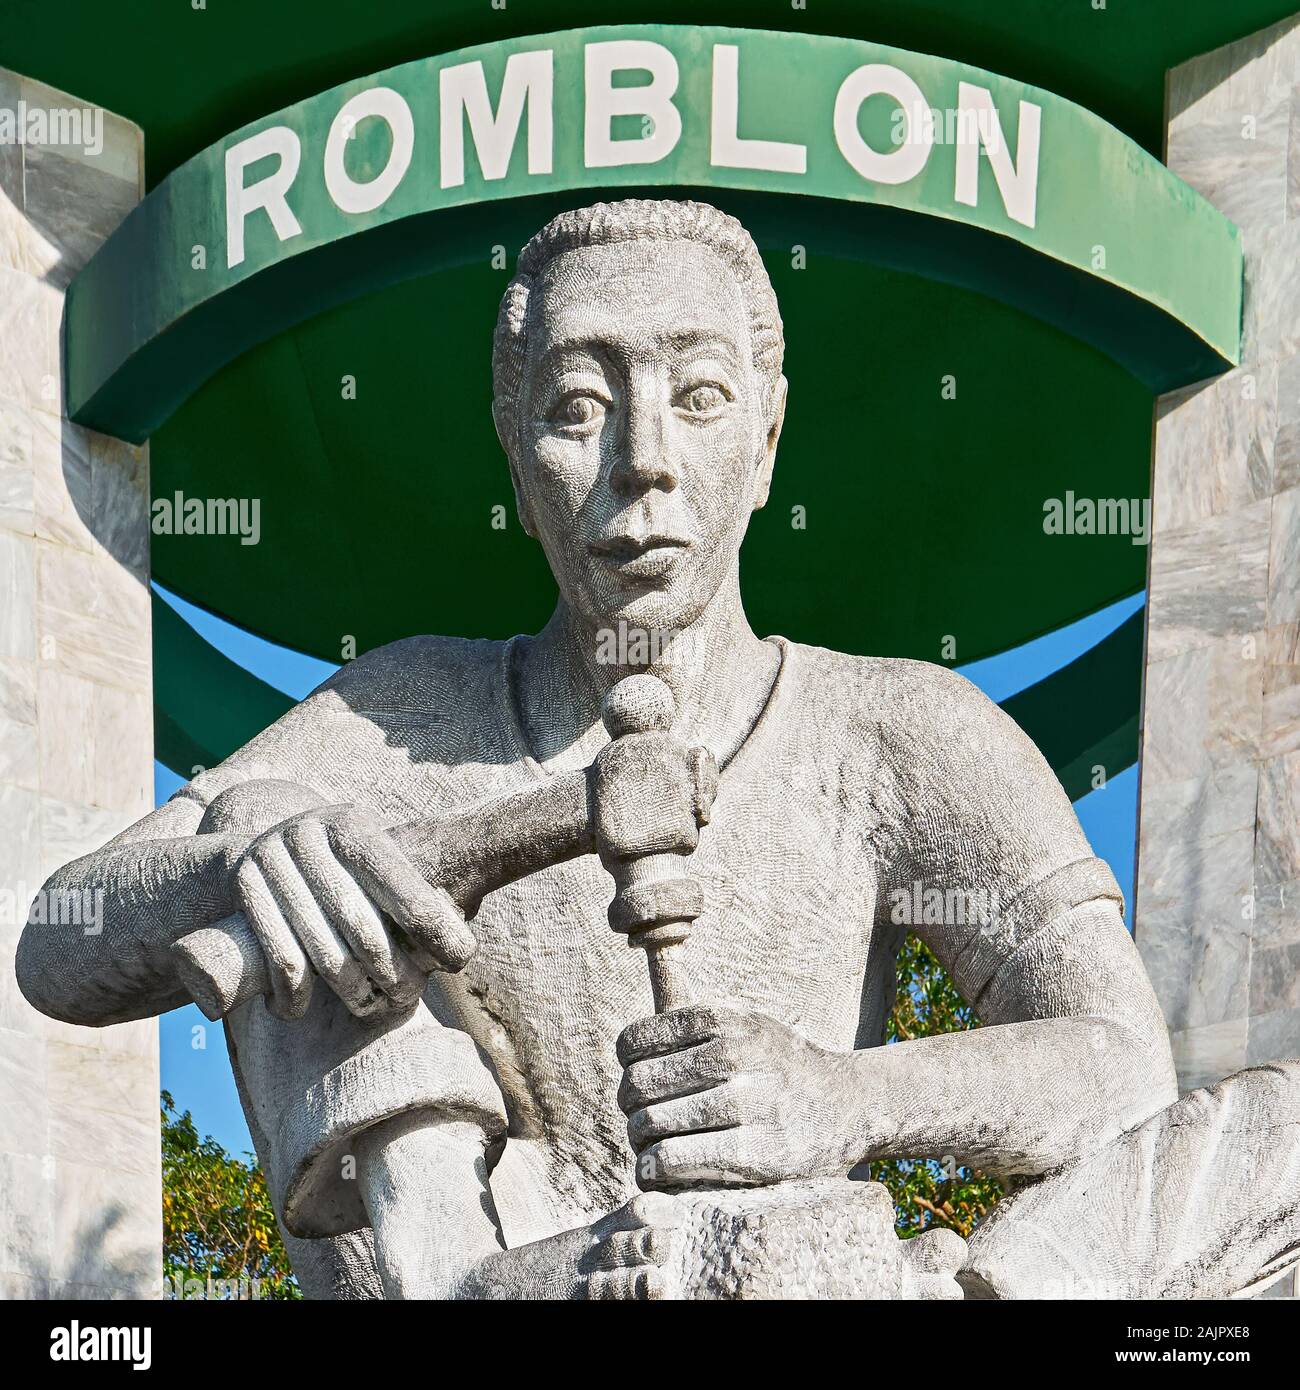 Romblon Town, Filippine: monumento in marmo dello scultore lavora con marmo, situato presso il Parco della Libertà nel centro della città Foto Stock